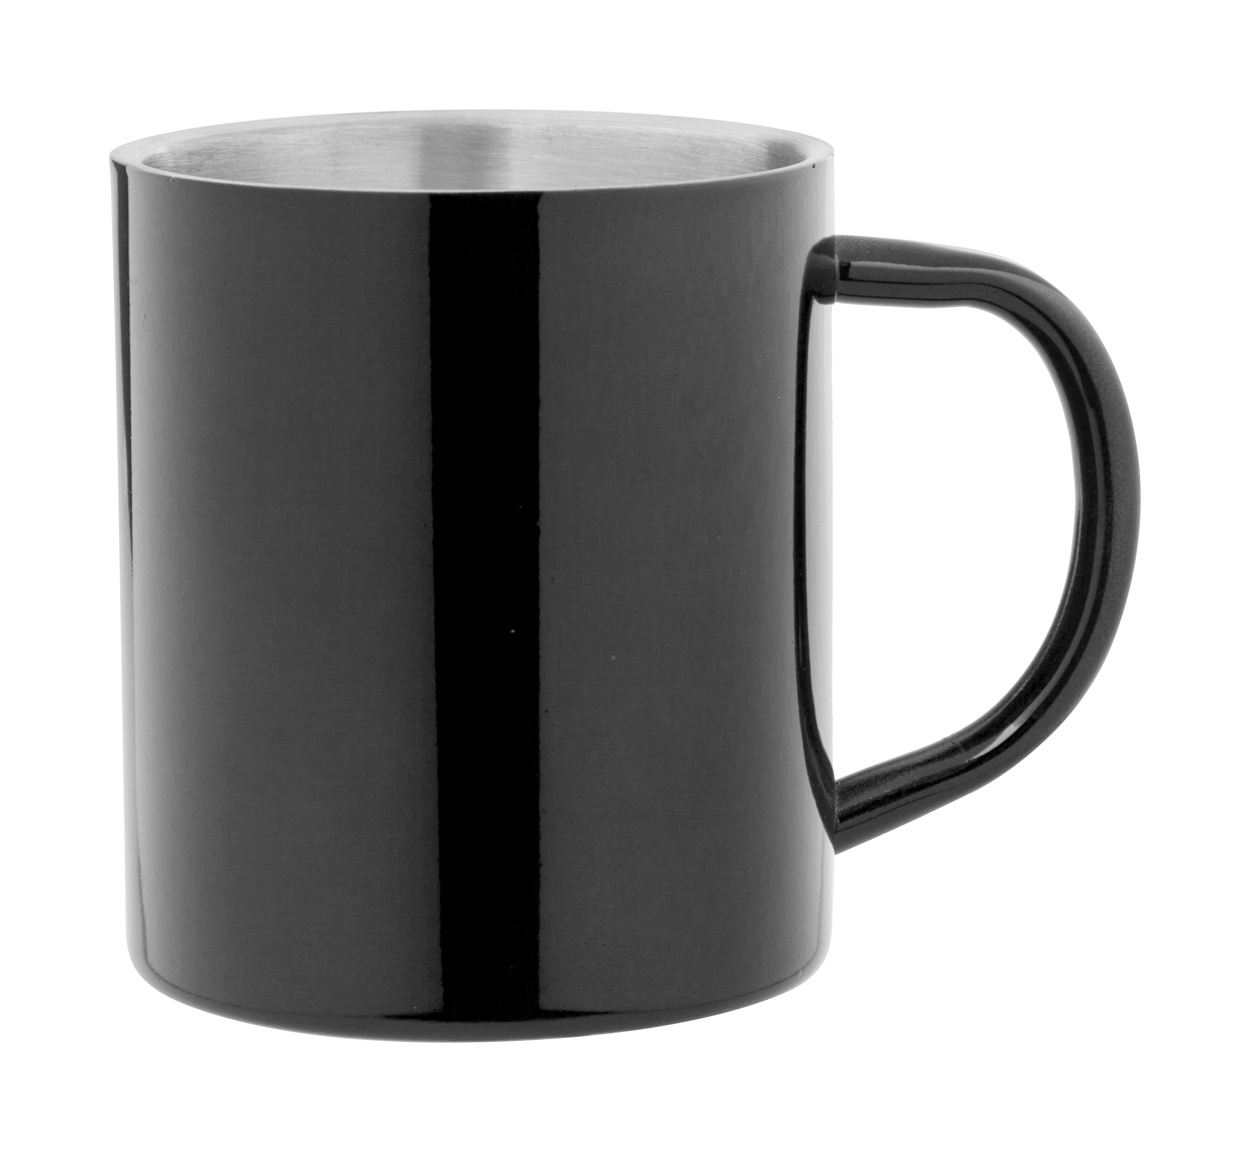 Metal thermo mug YOZAX, 300 ml